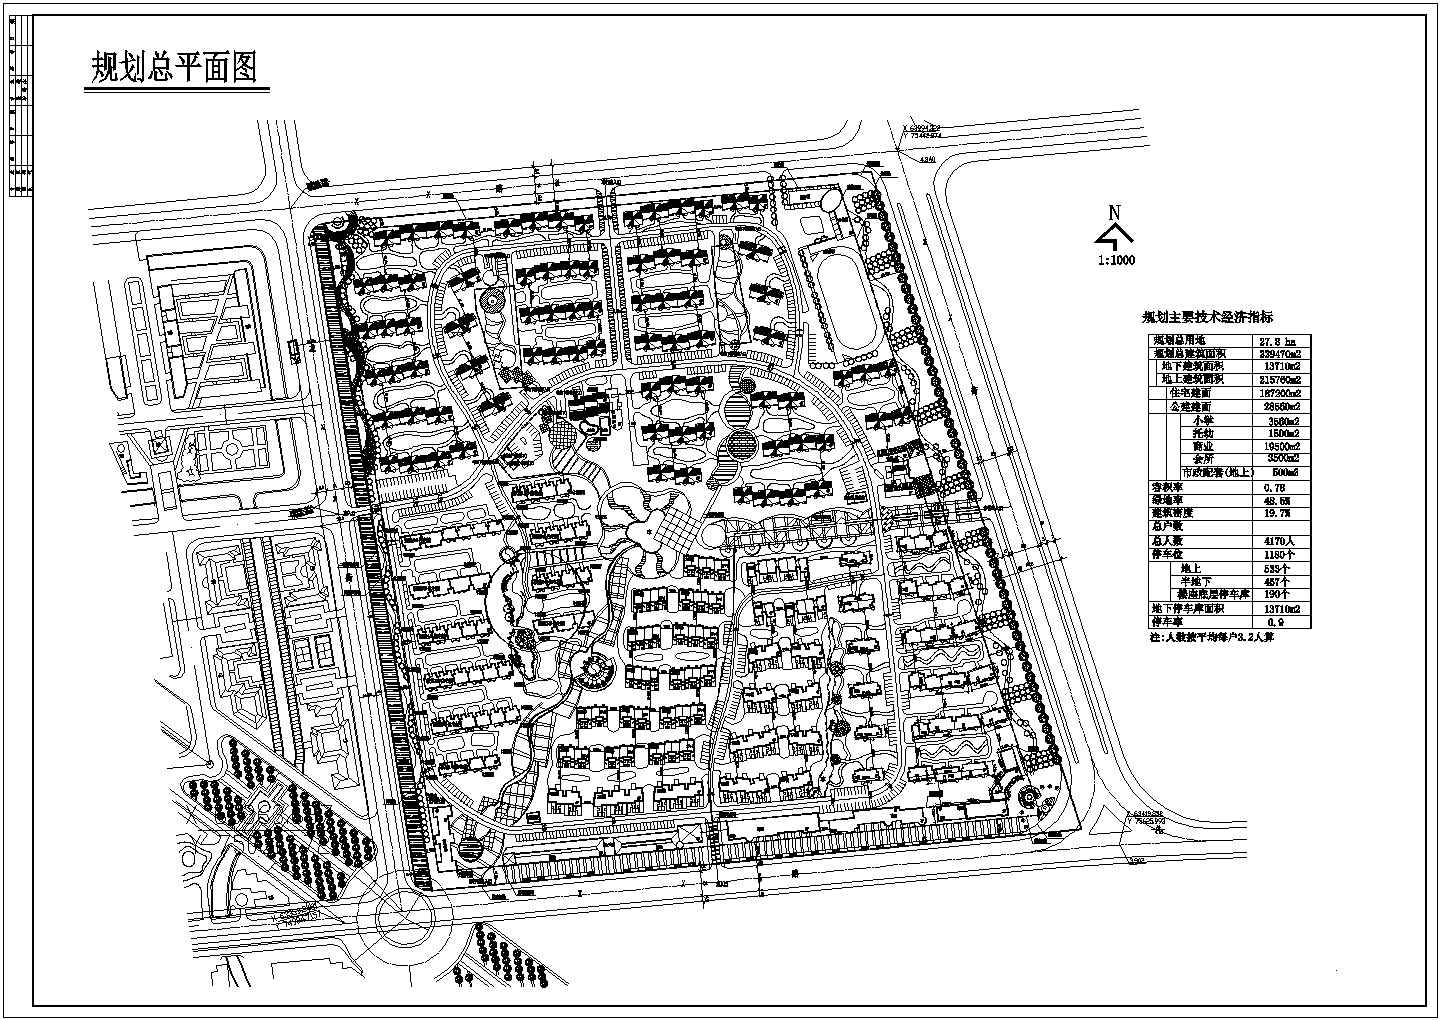 规划总用地27.8ha居住区详细规划总平面图